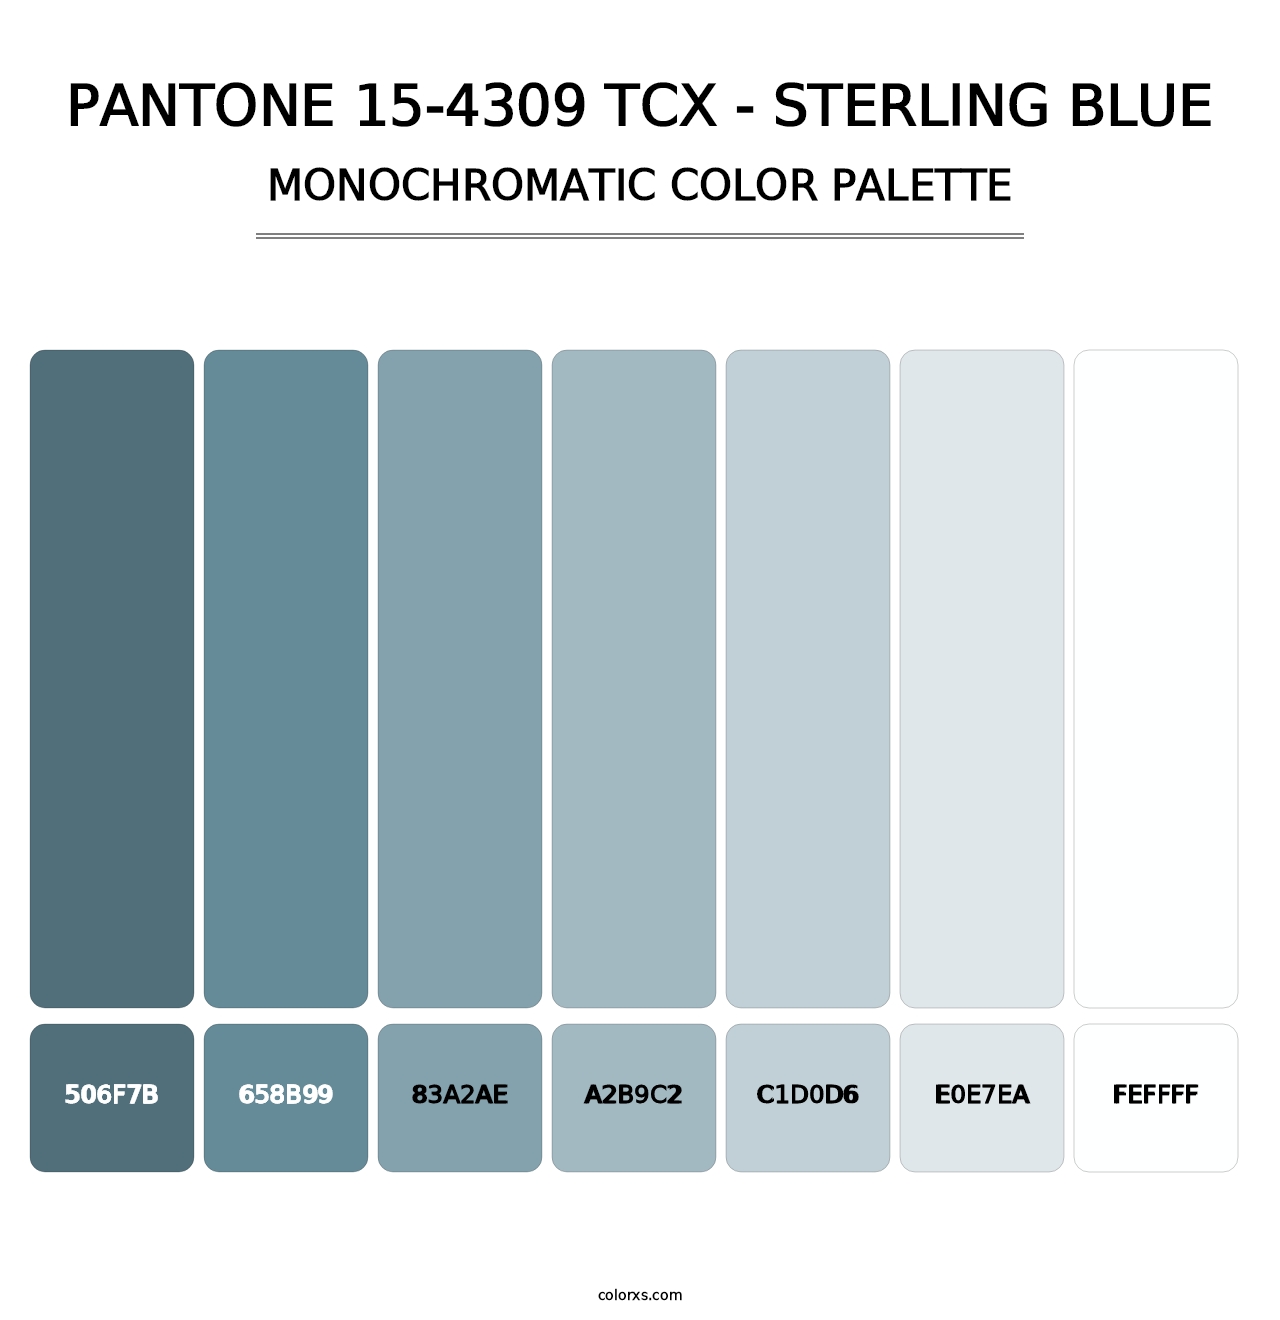 PANTONE 15-4309 TCX - Sterling Blue - Monochromatic Color Palette